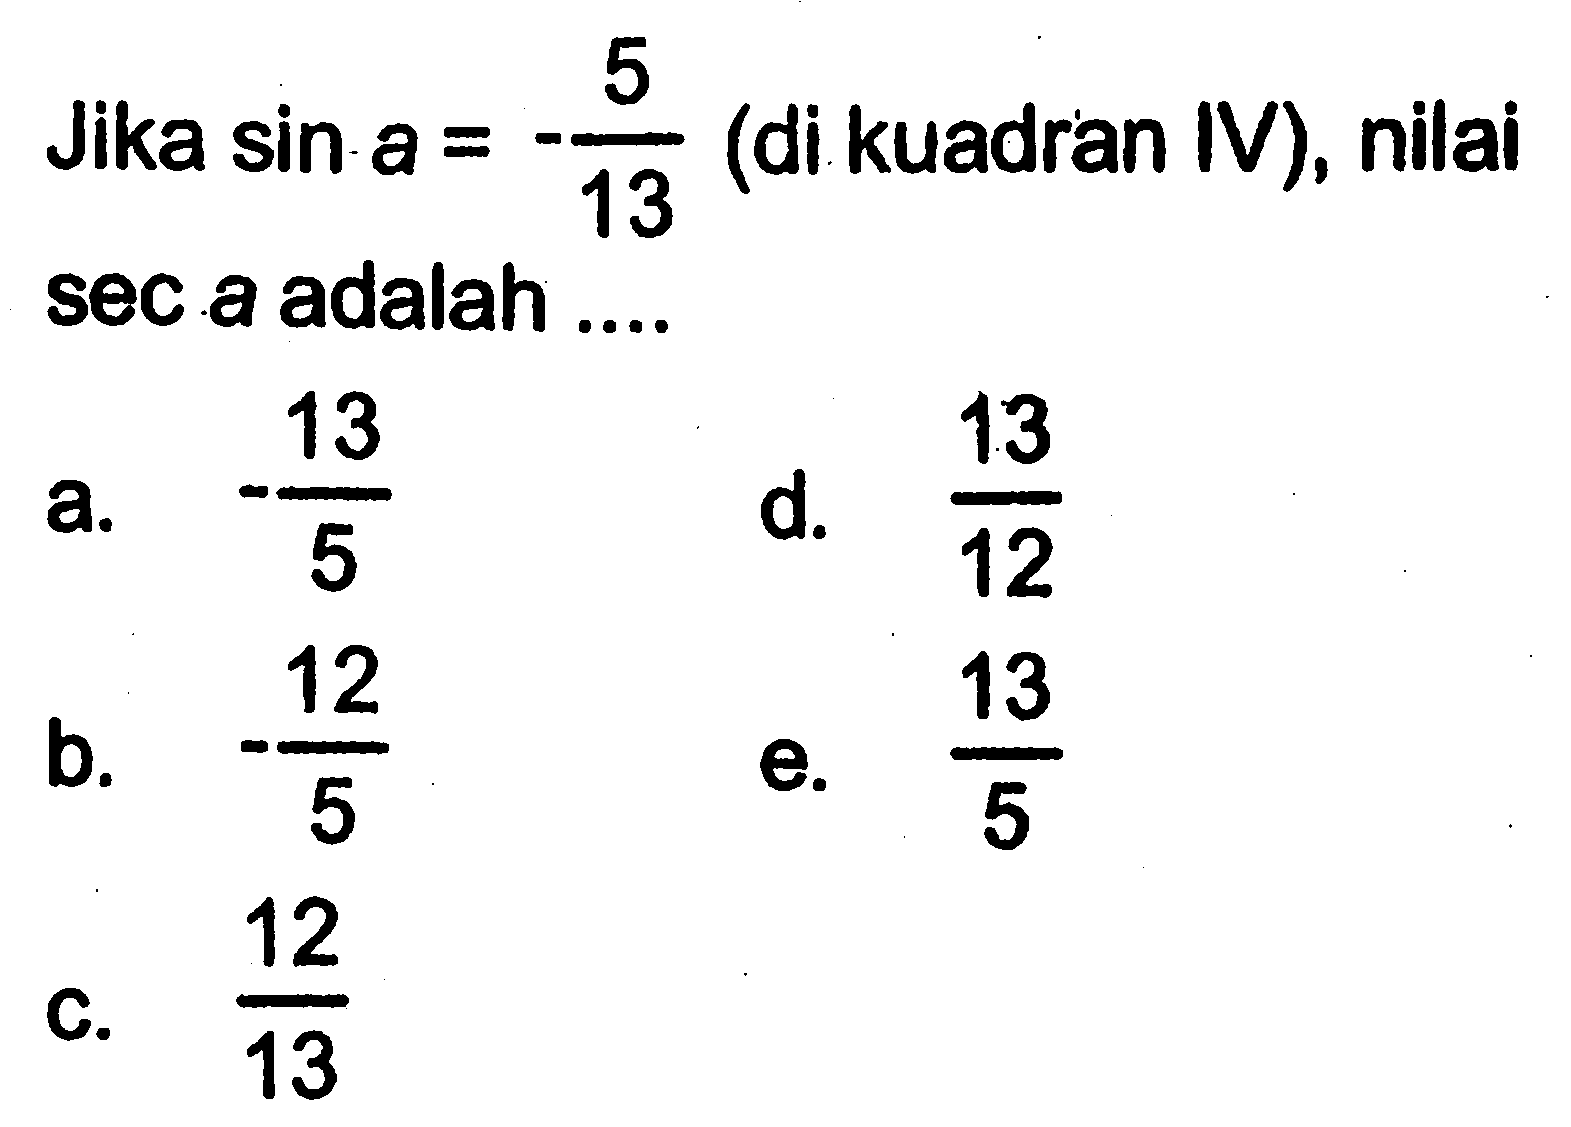 Jika  sin a=-5/13  (di kuadran IV), nilai sec a adalah ....